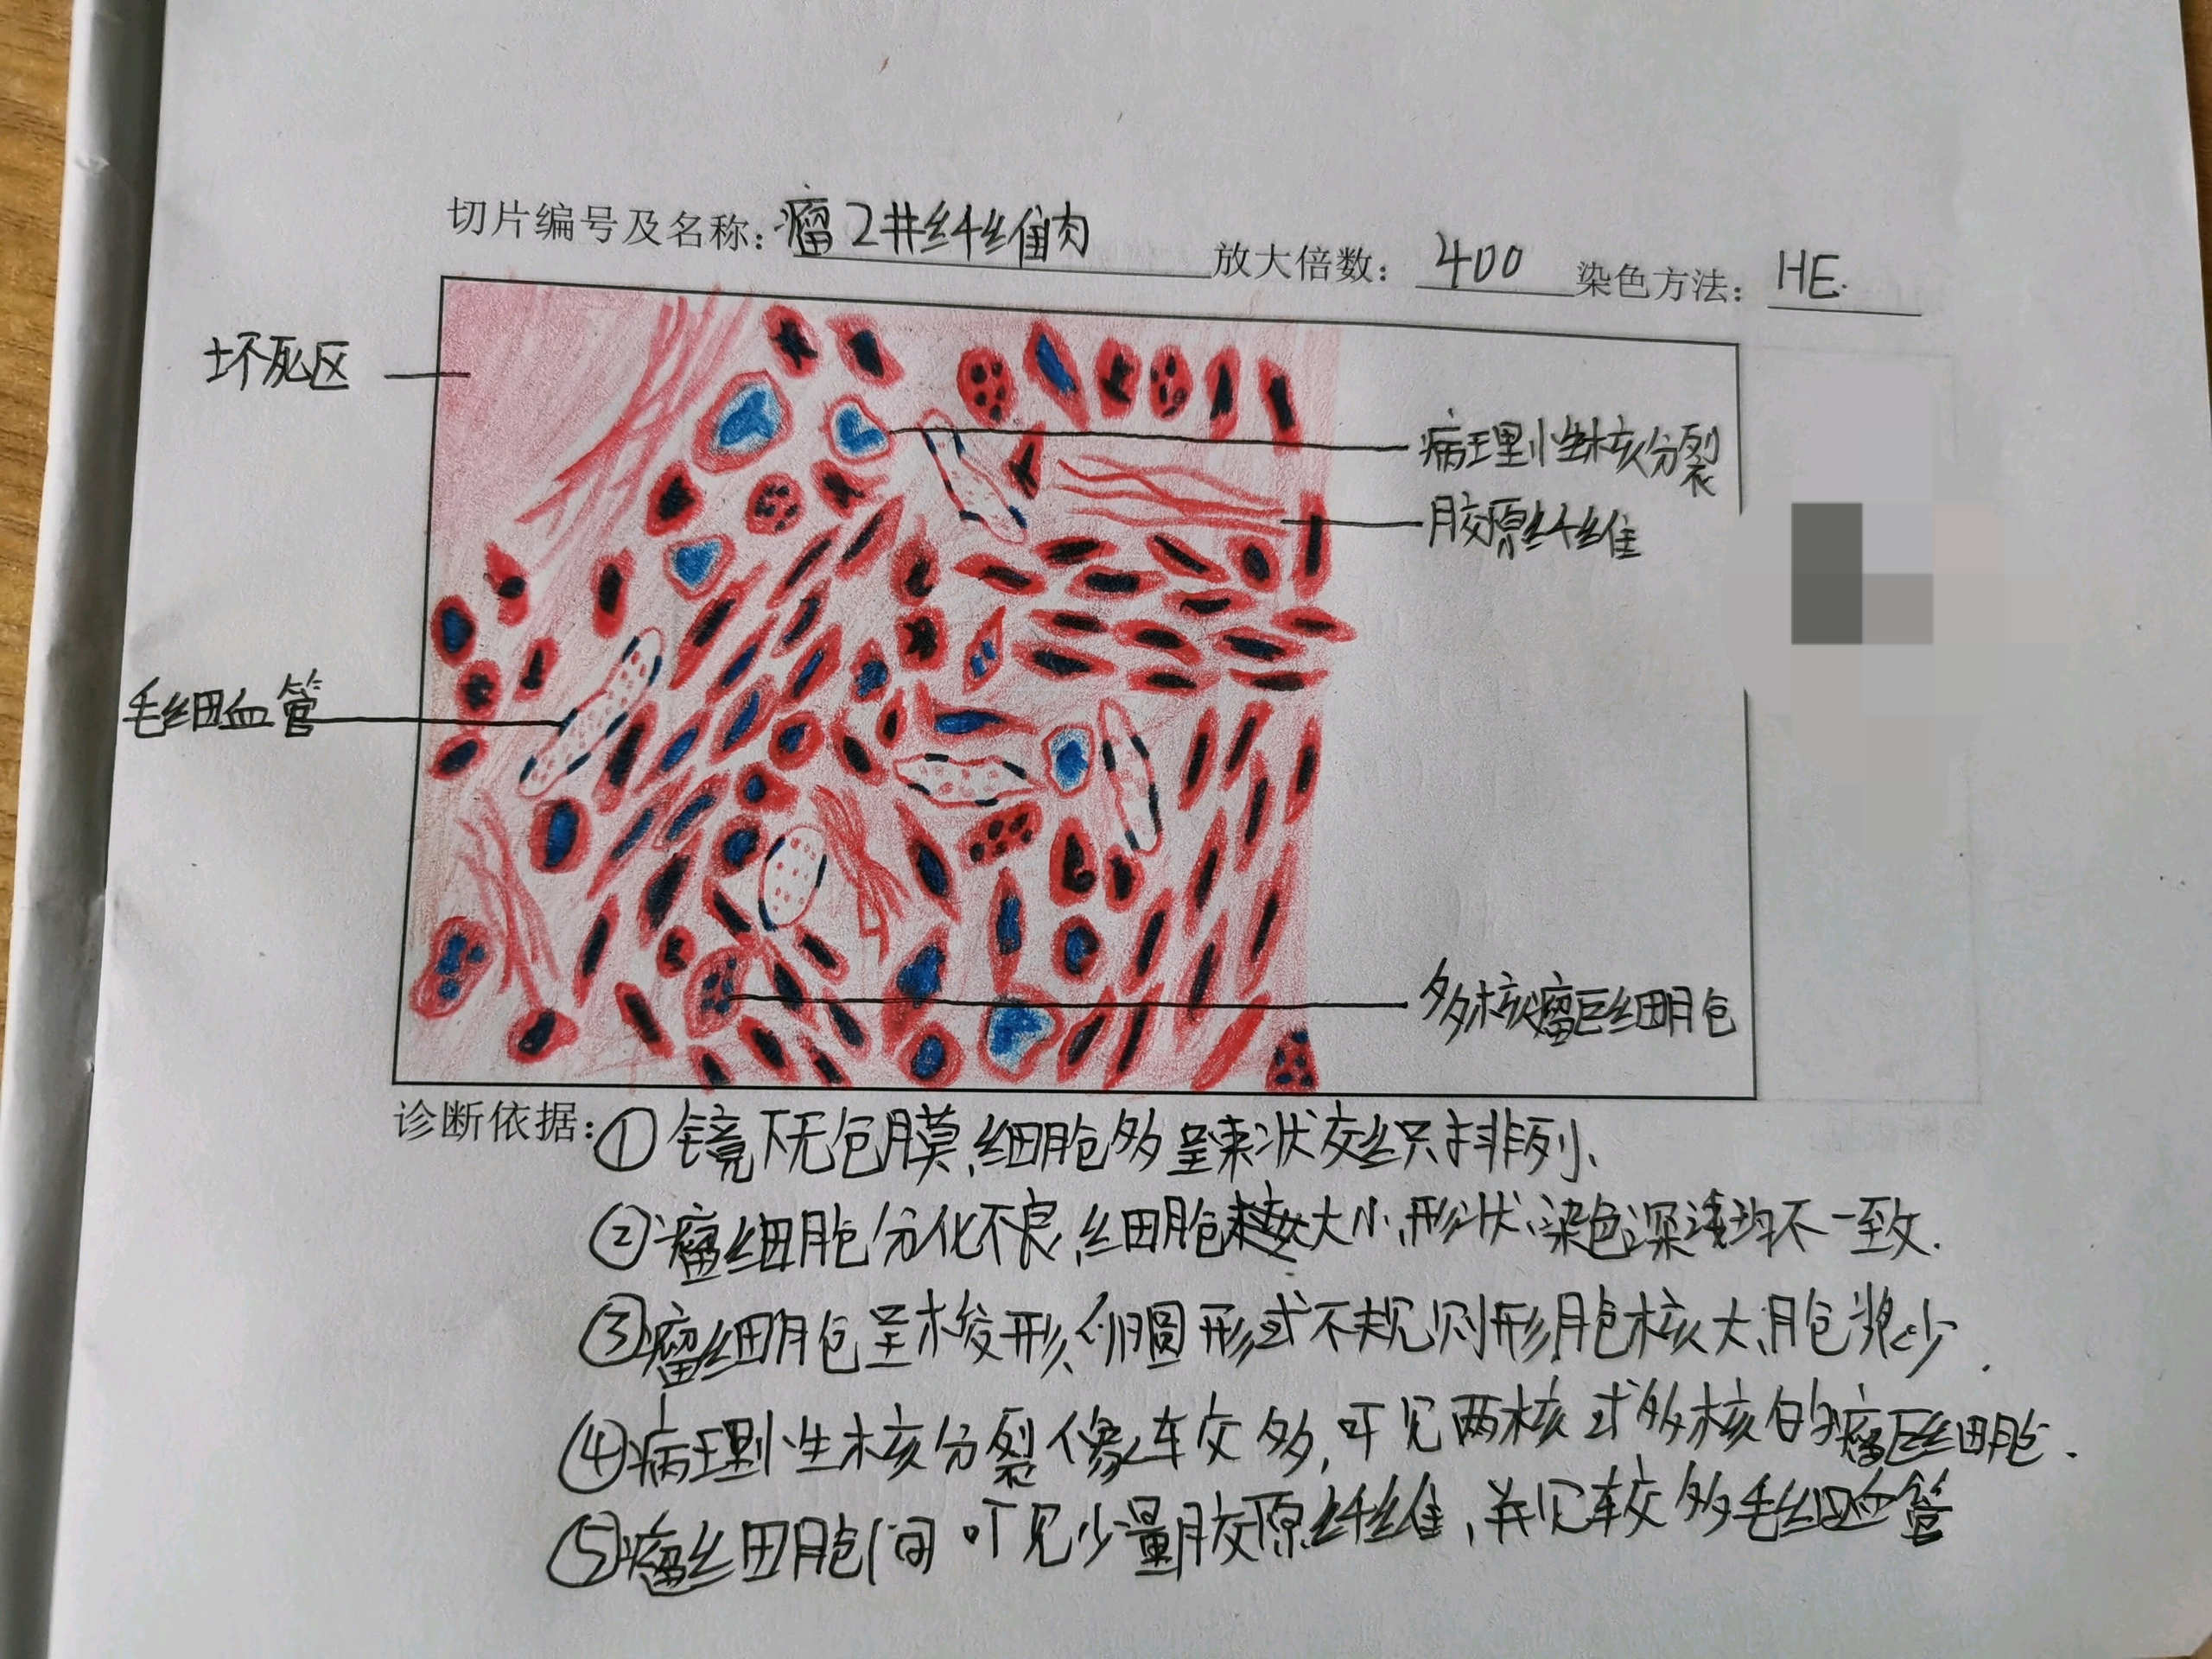 纤维瘤,纤维肉瘤镜下红蓝铅笔手绘图 